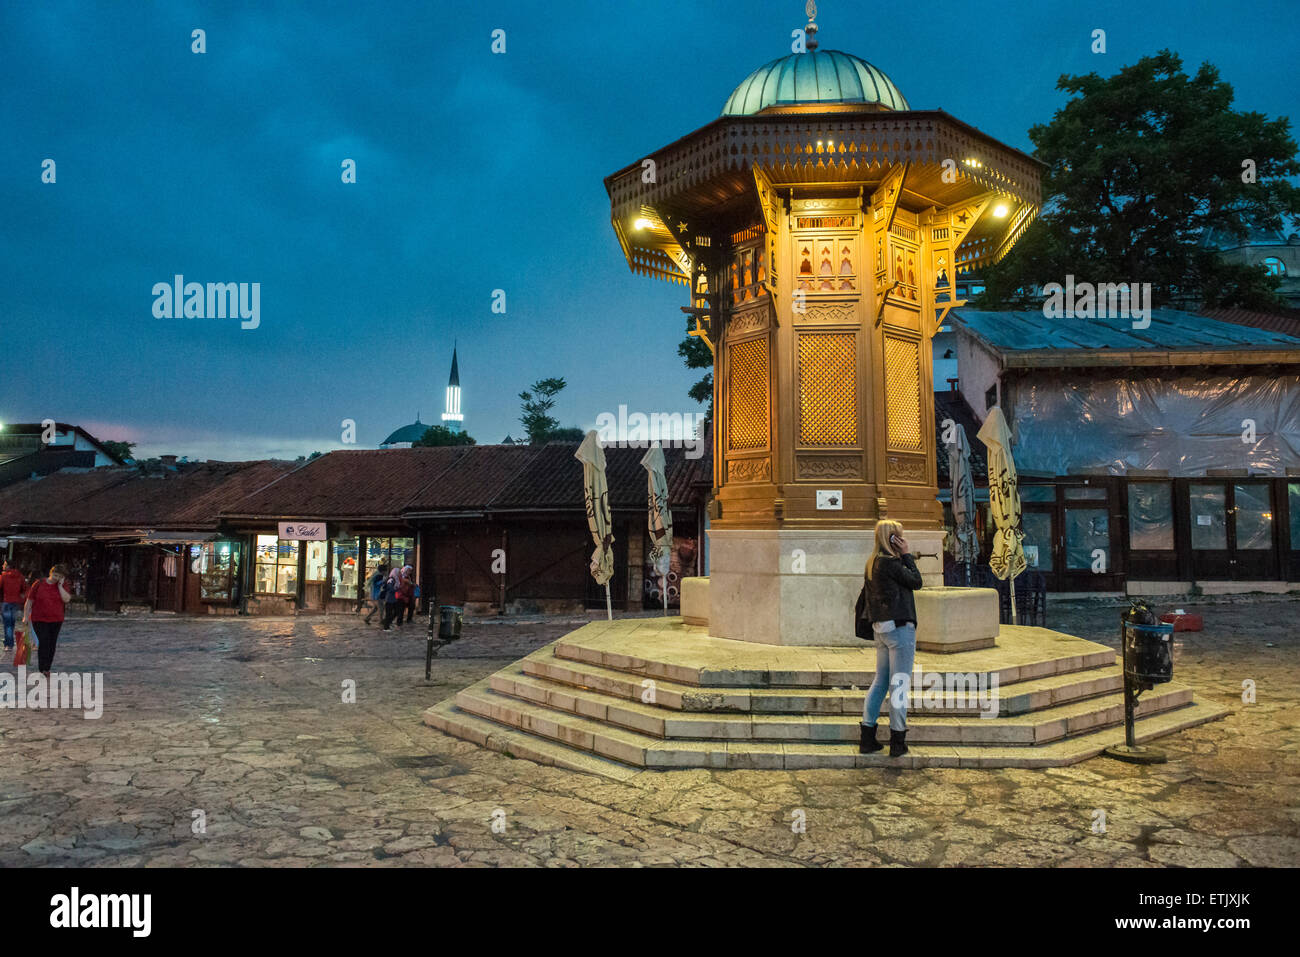 sebilj fountain in Bascarsija quarter in Sarajevo Stock Photo